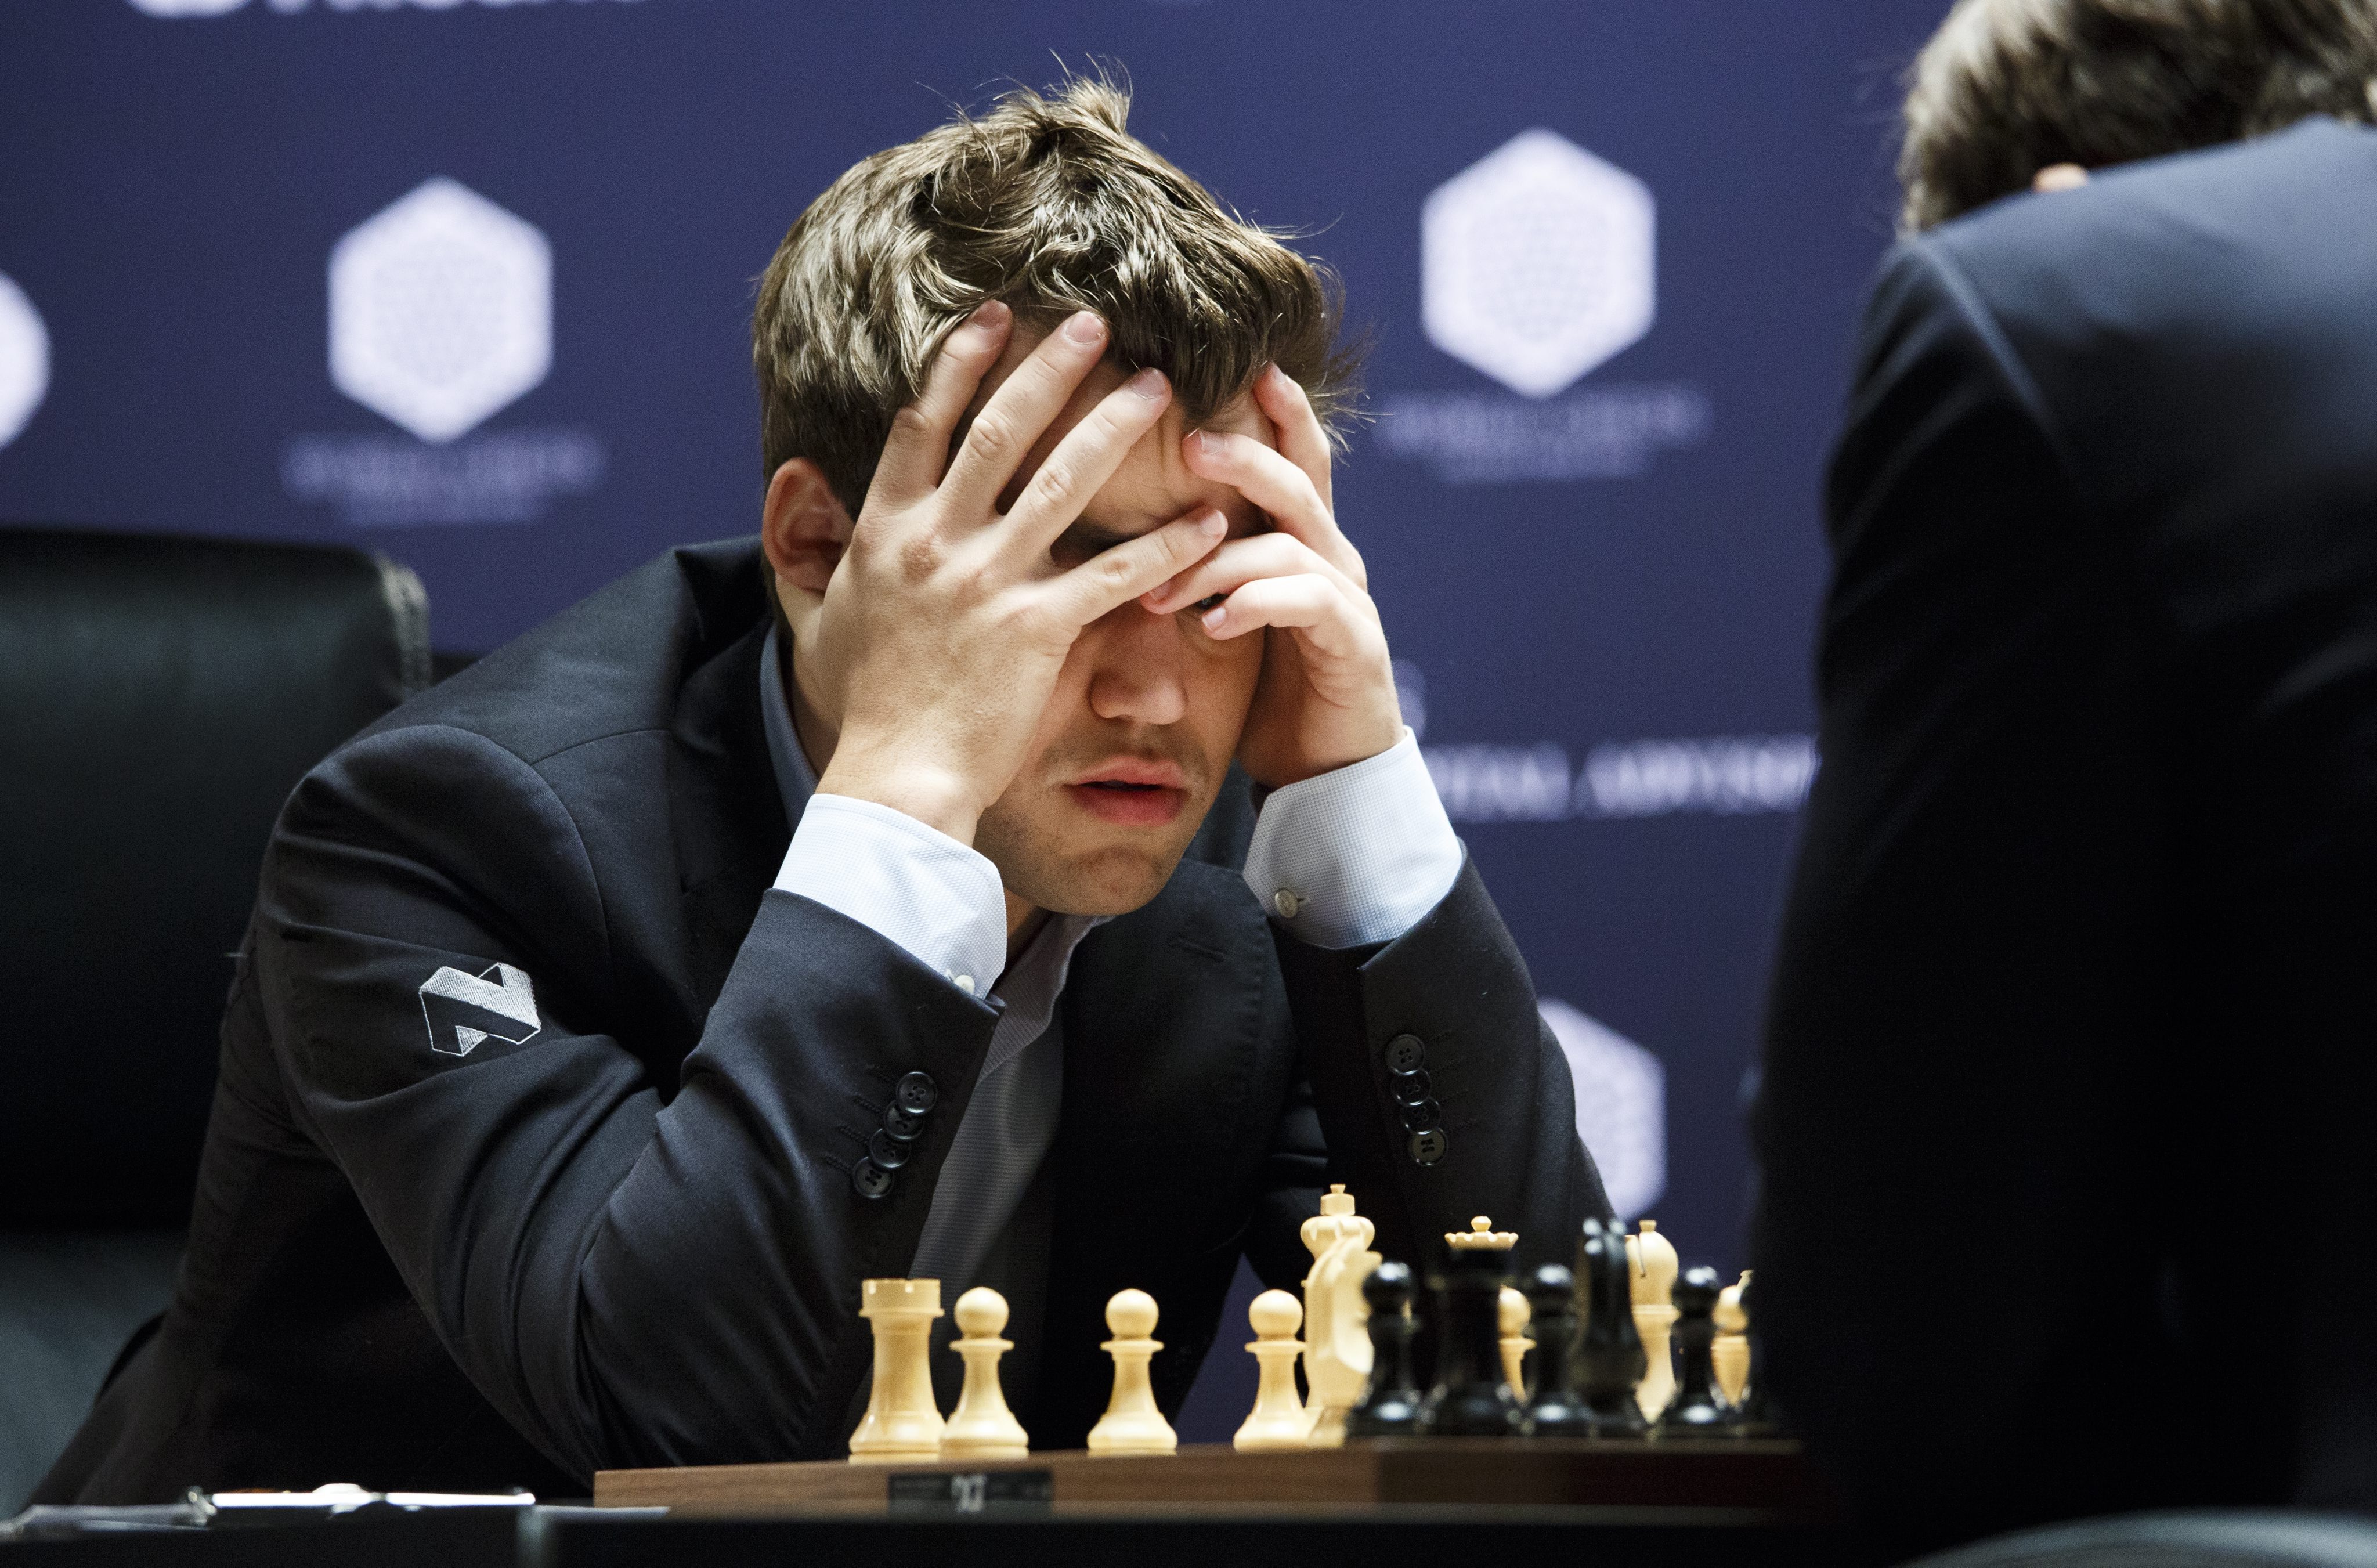 Wat is er toch aan de hand met Magnus Carlsen, de Noorse 'Mozart van het schaken'? Zijn Russische opponent Sergey Karjakin voor de WK-titel was een prima schaker, maar Carlsen zou de tweekamp toch moeten winnen. Maar Carlsen lijkt zichzelf niet - hij speelt behoudend, en stuurde in zijn laatste partij overduidelijk aan op een remise.